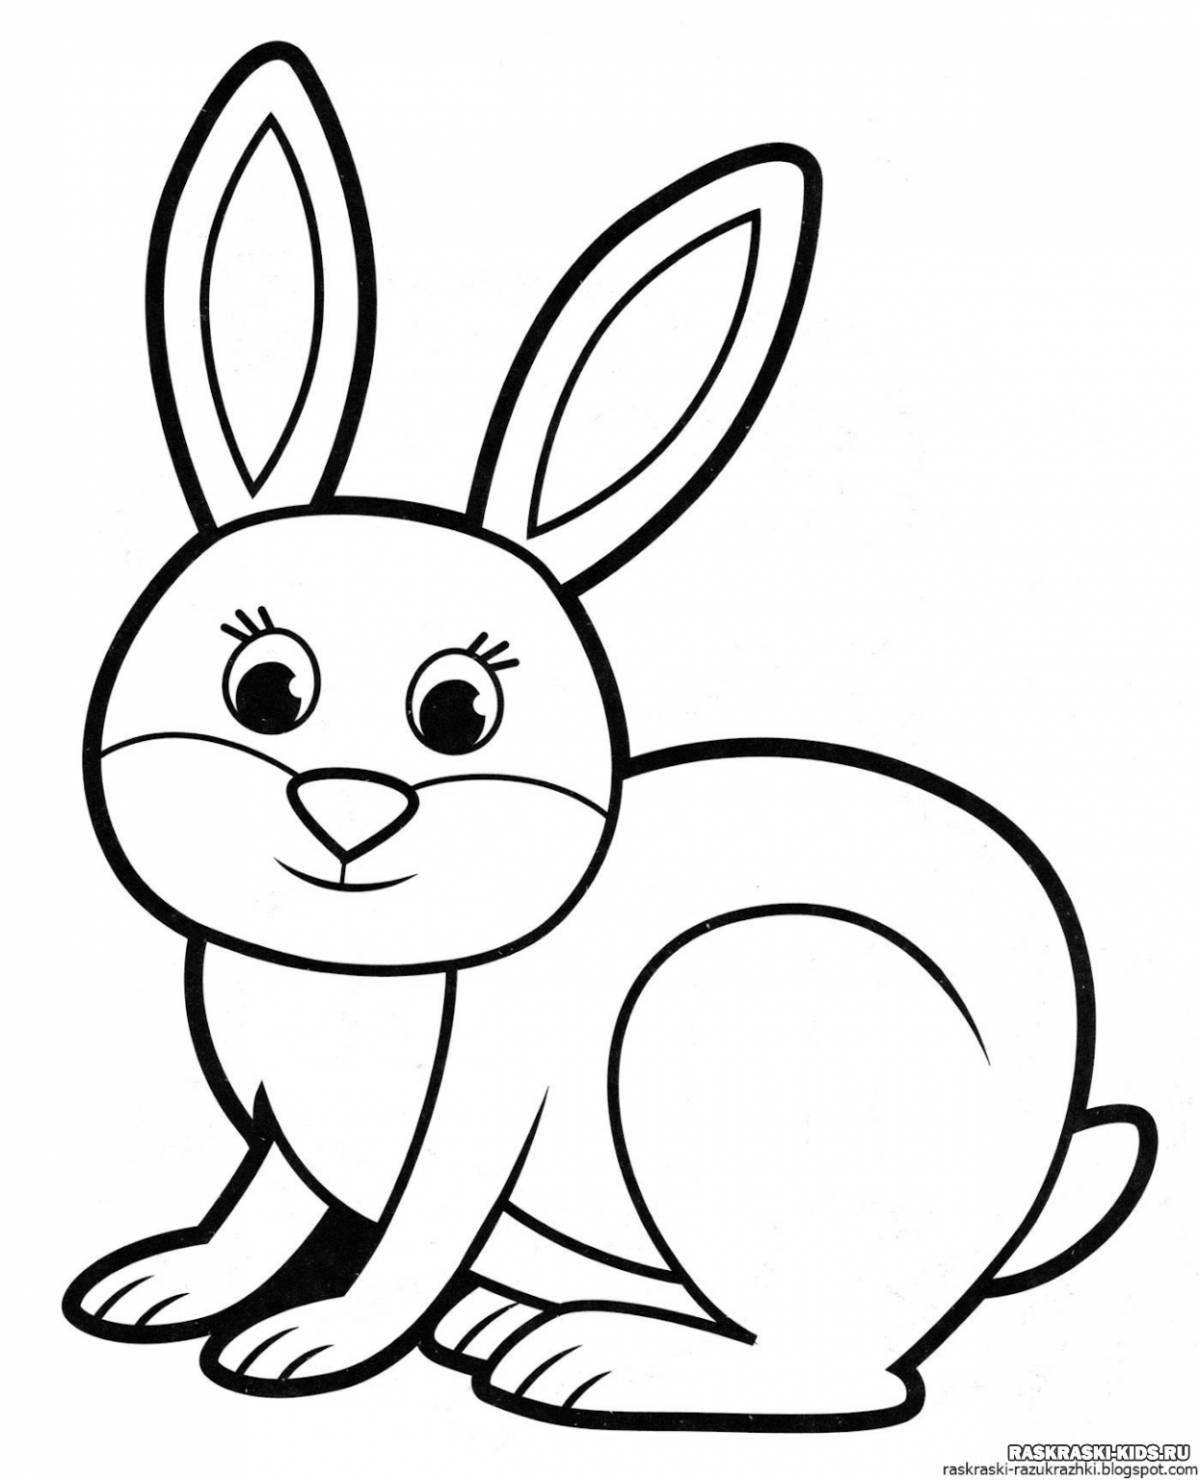 Милый кролик с принтом раскраски